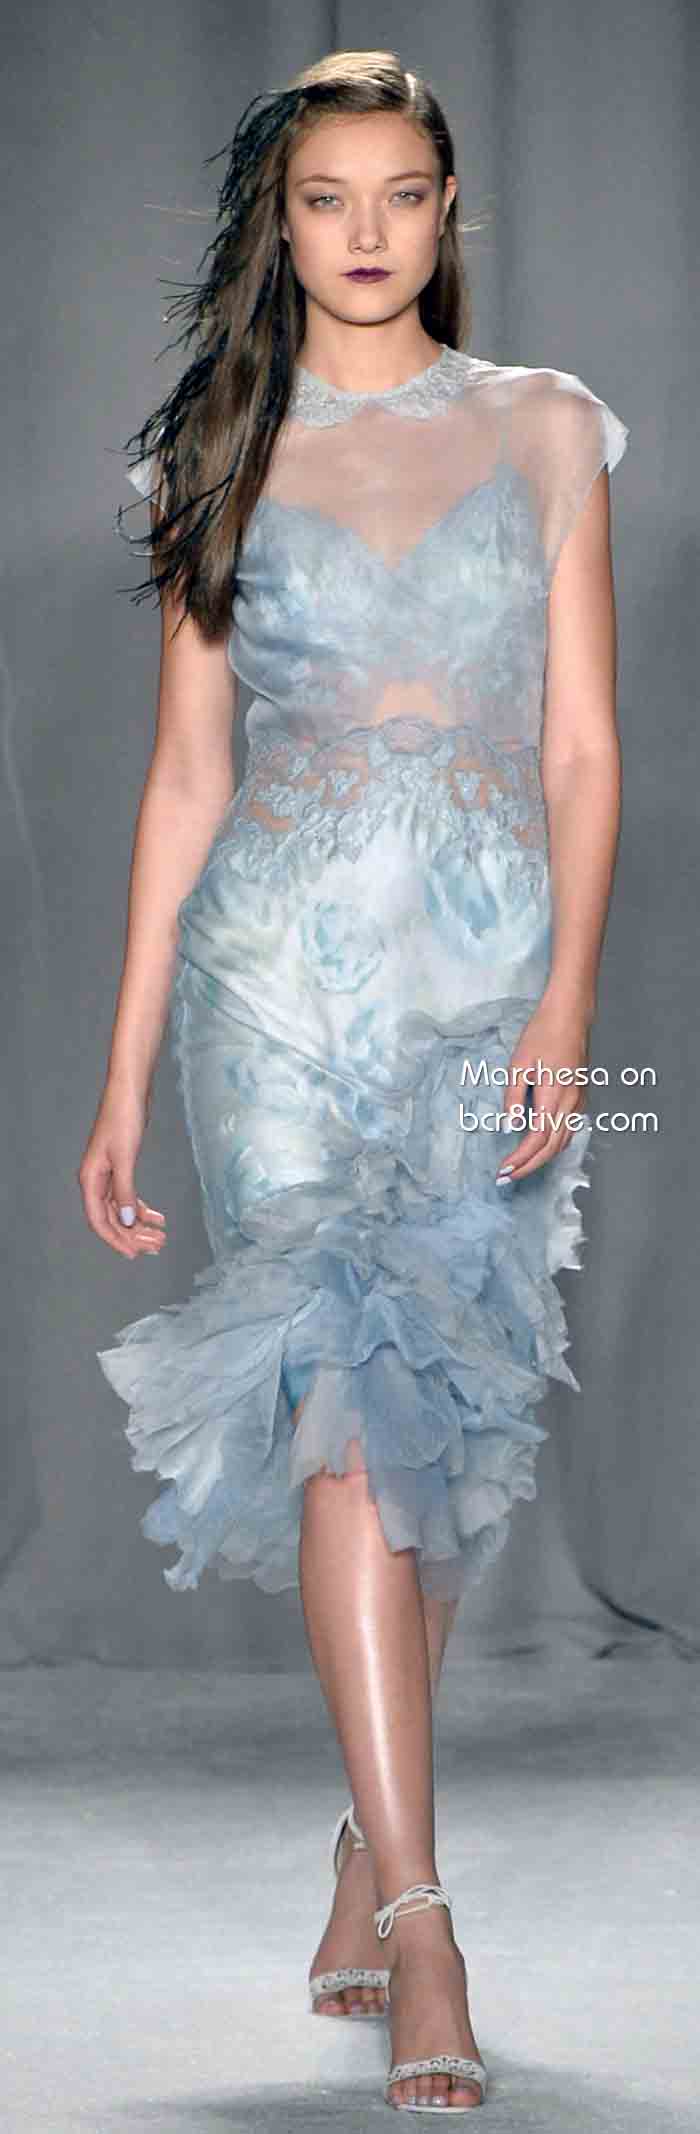 Маркиза Весна 2014 Готовое платье # NYFW